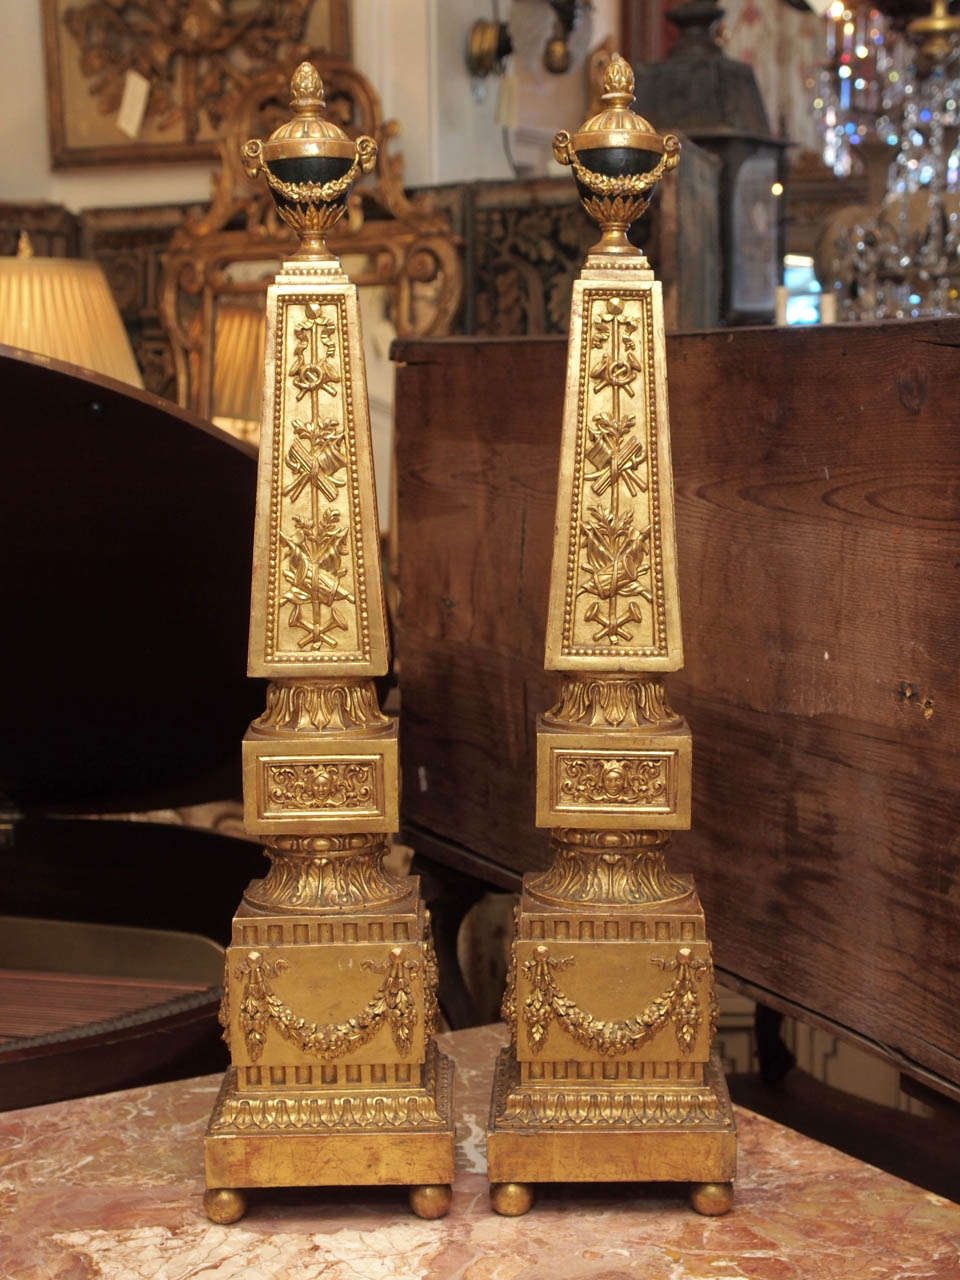 Paar aus dem 18. Italienischer Luigi XVI Obelisk aus vergoldetem Holz mit eiförmigen Endstücken, die mit Girlanden und Widderköpfen bestückt sind und von einem Eichelkreuz gekrönt werden.
Der Obelisk ist mit geschnitzten kriegsbezogenen